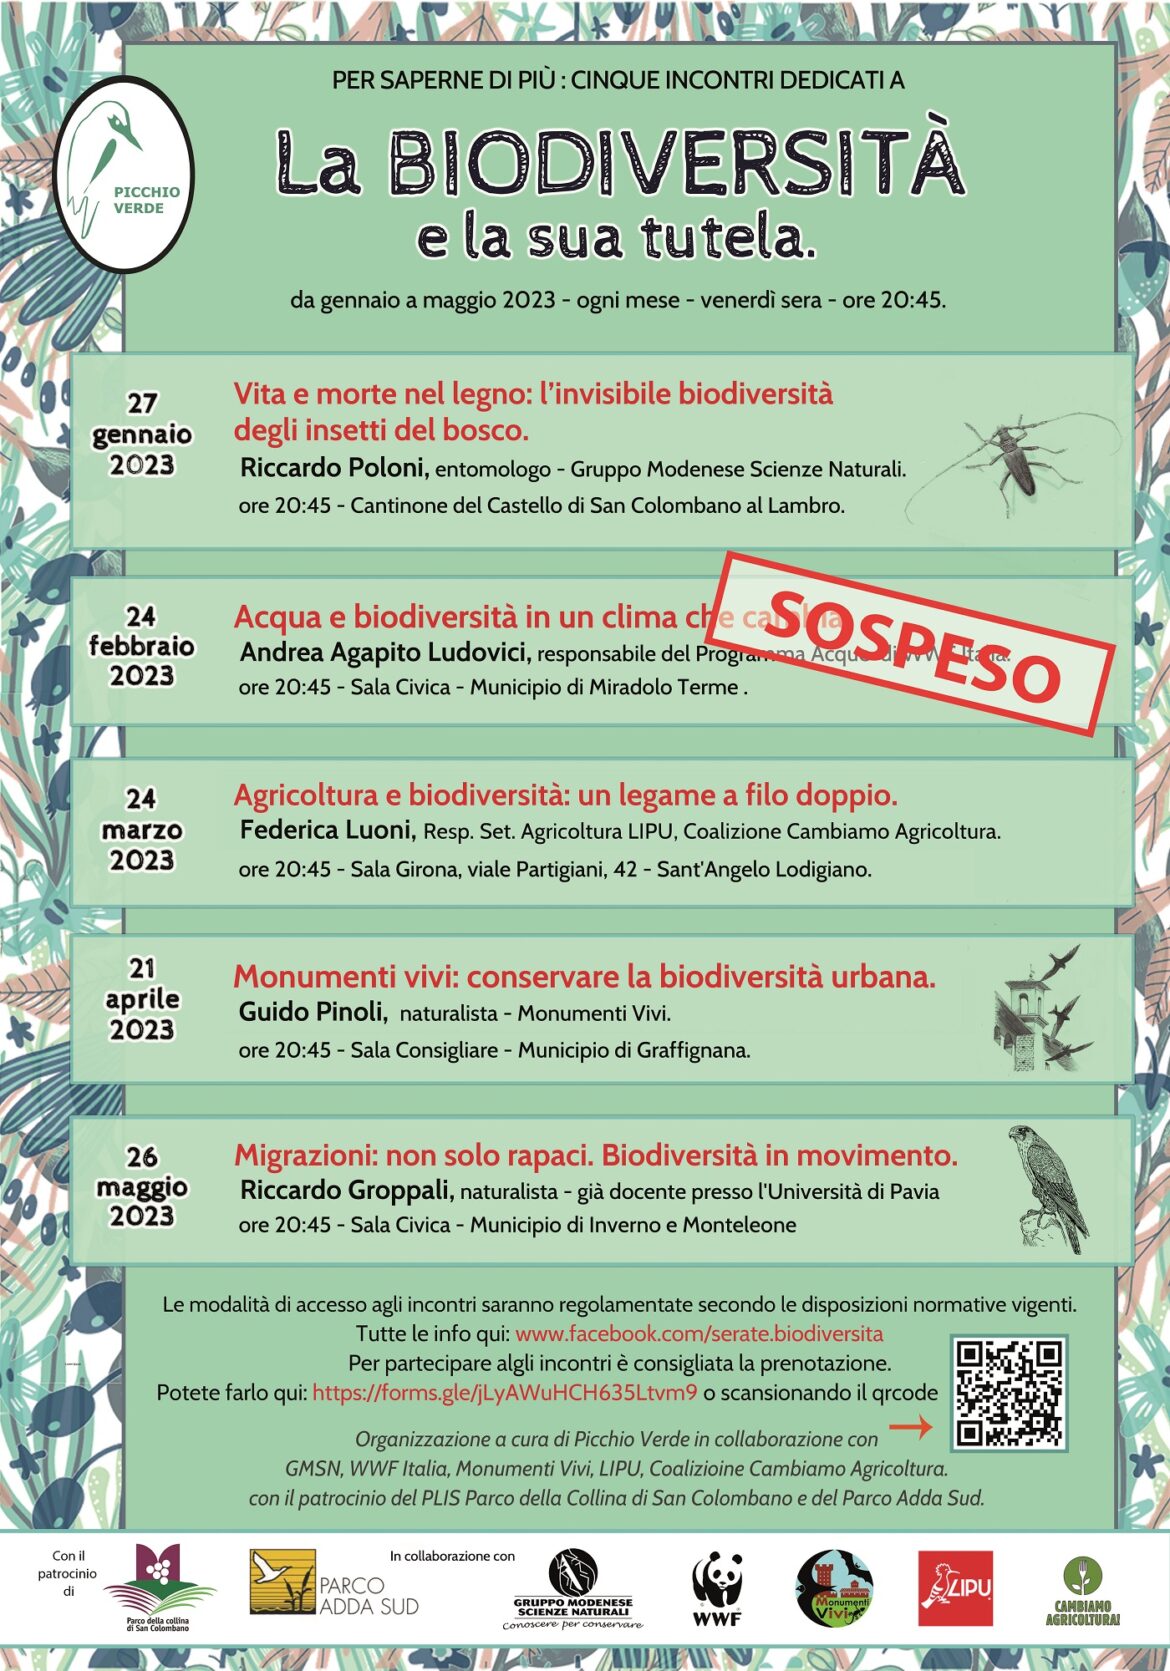 La-Biodiversita-e-la-sua-tutela_2023_aggiornato_feb23.jpg